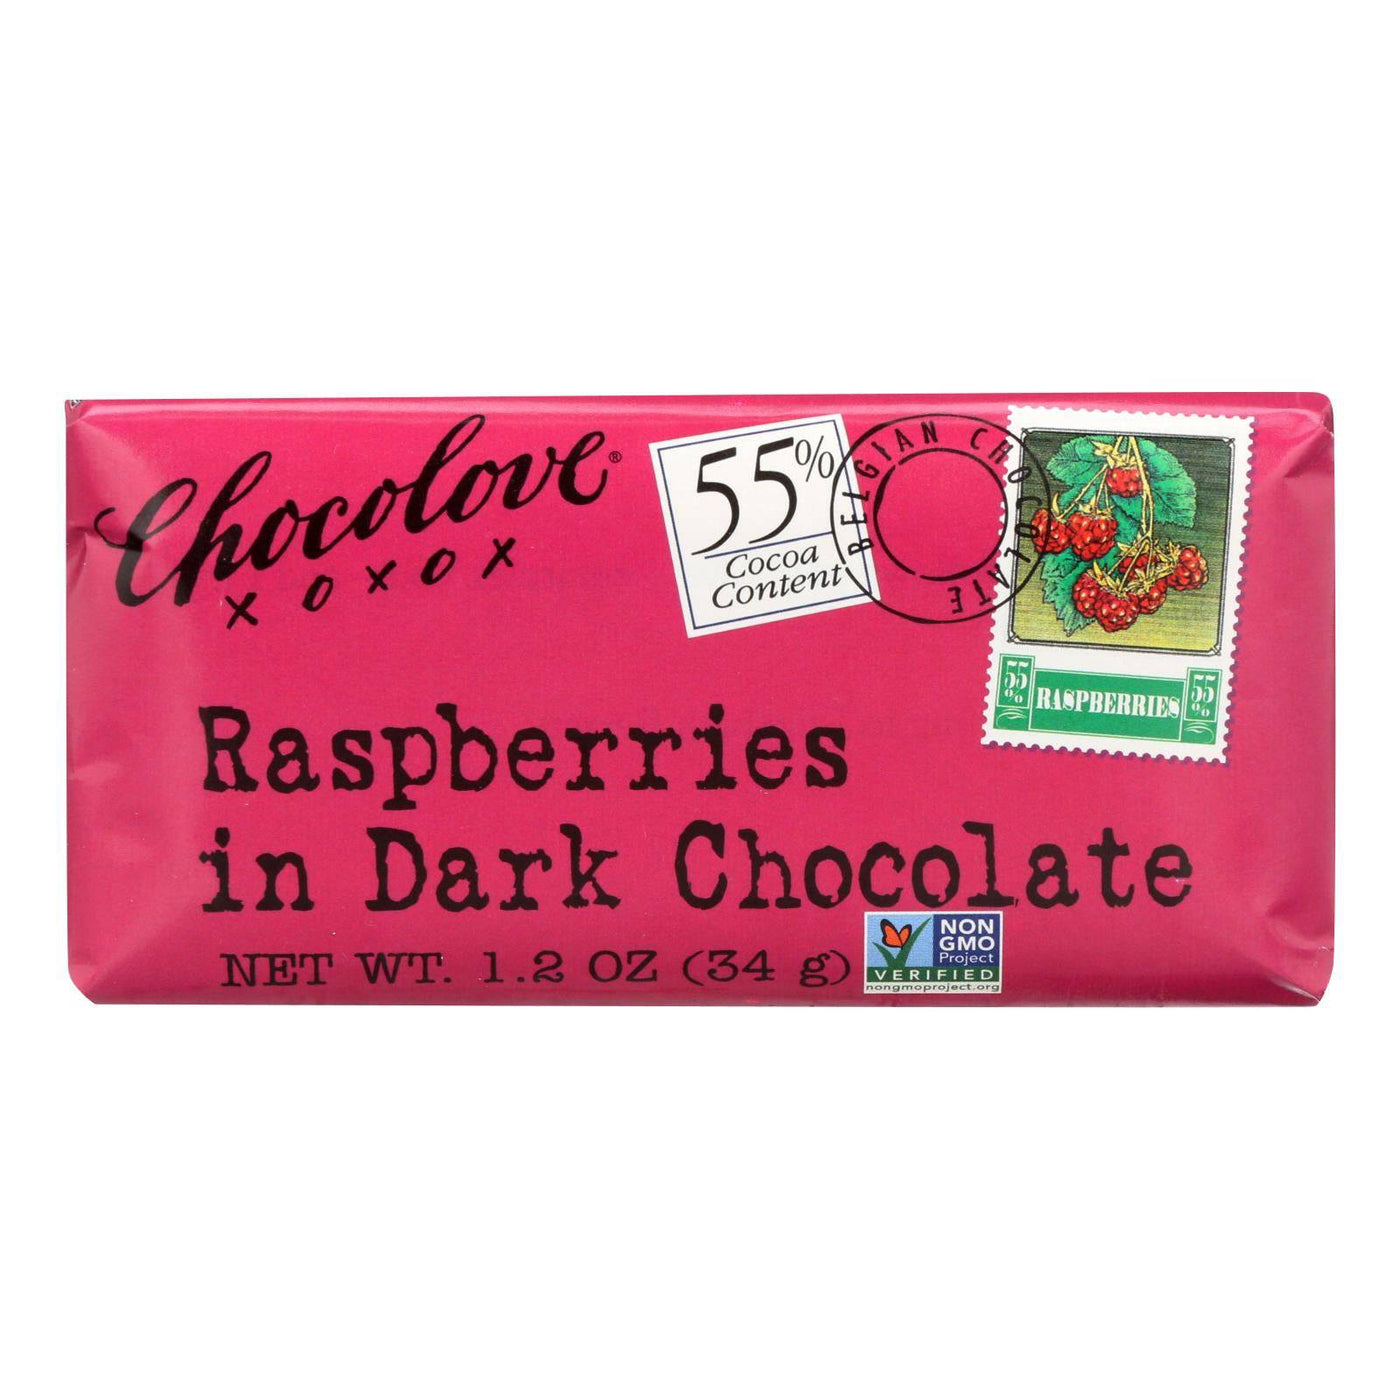 Buy Chocolove Xoxox - Premium Chocolate Bar - Dark Chocolate - Raspberries - Mini - 1.2 Oz Bars - Case Of 12  at OnlyNaturals.us